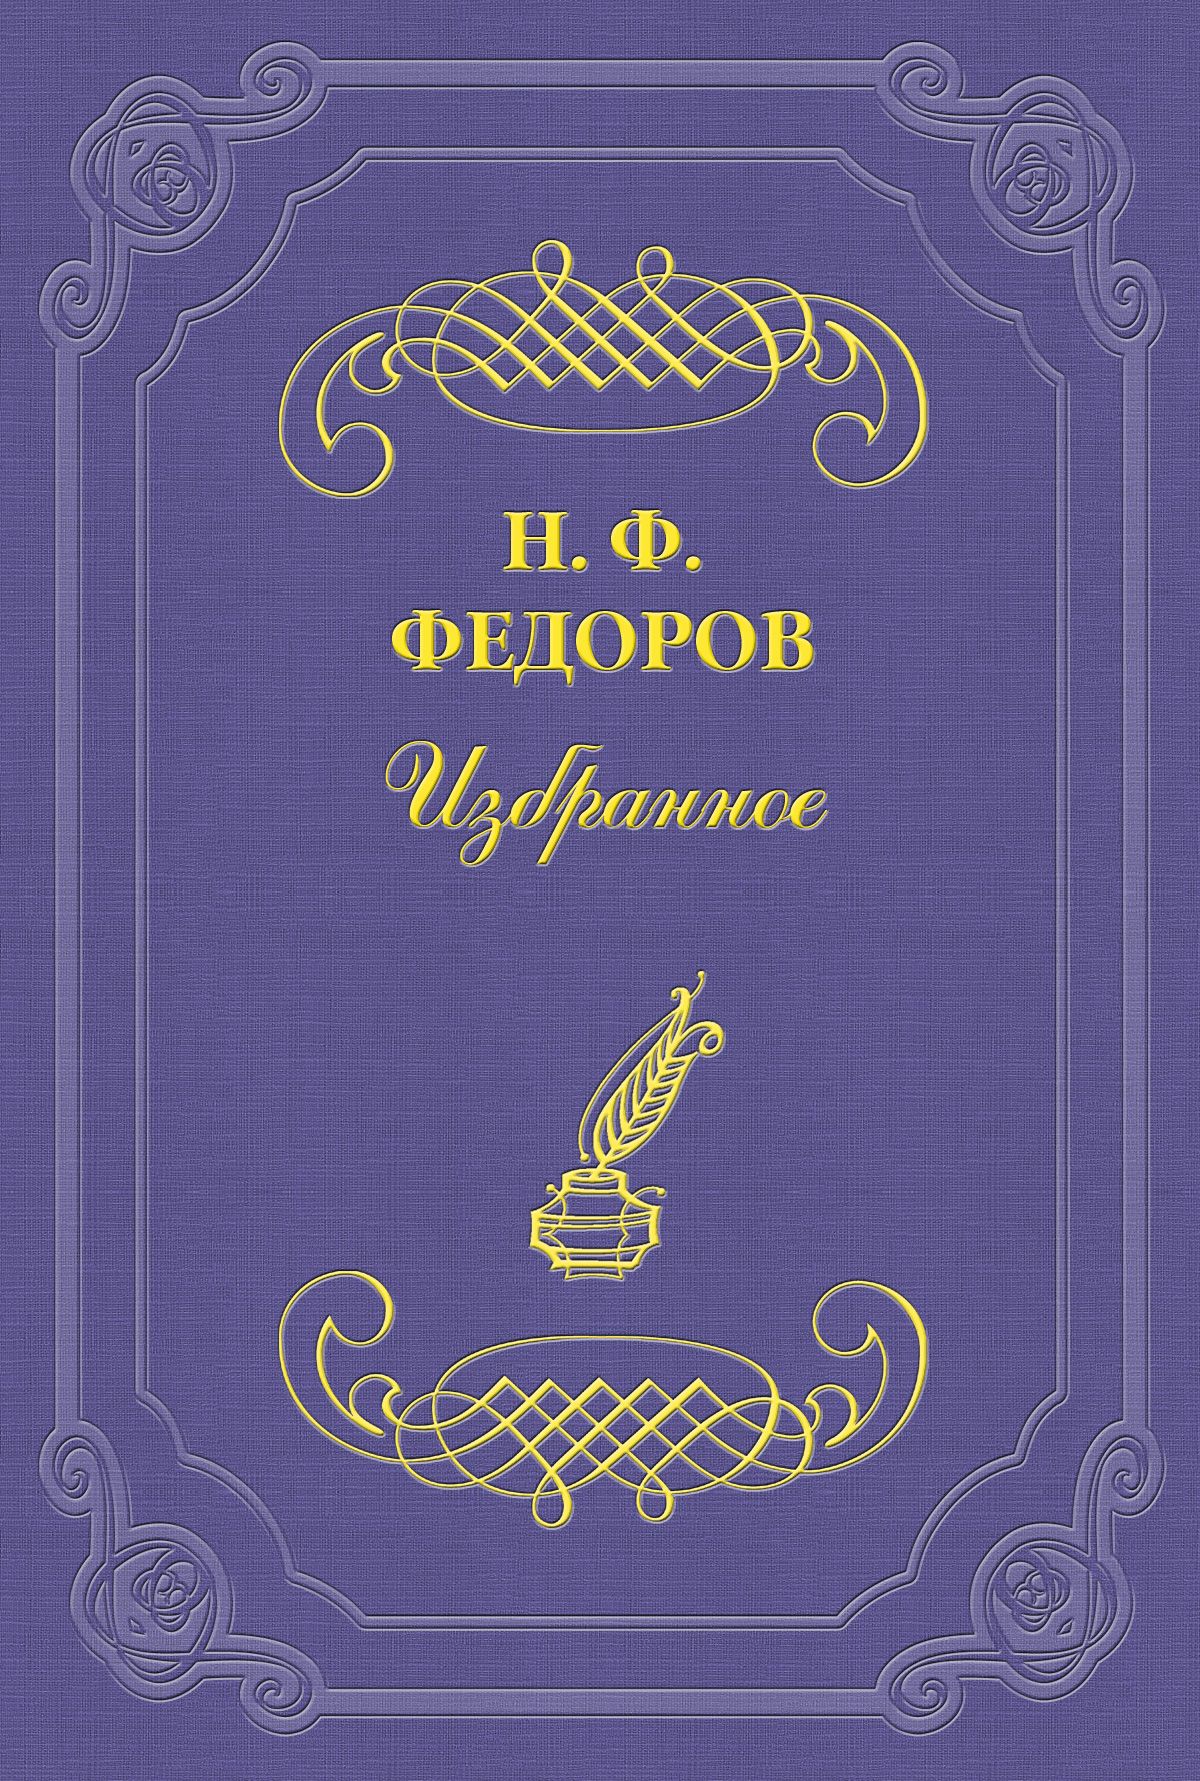 Книга О Якоби из серии , созданная Николай Федоров, может относится к жанру Философия. Стоимость книги О Якоби  с идентификатором 2695825 составляет 5.99 руб.